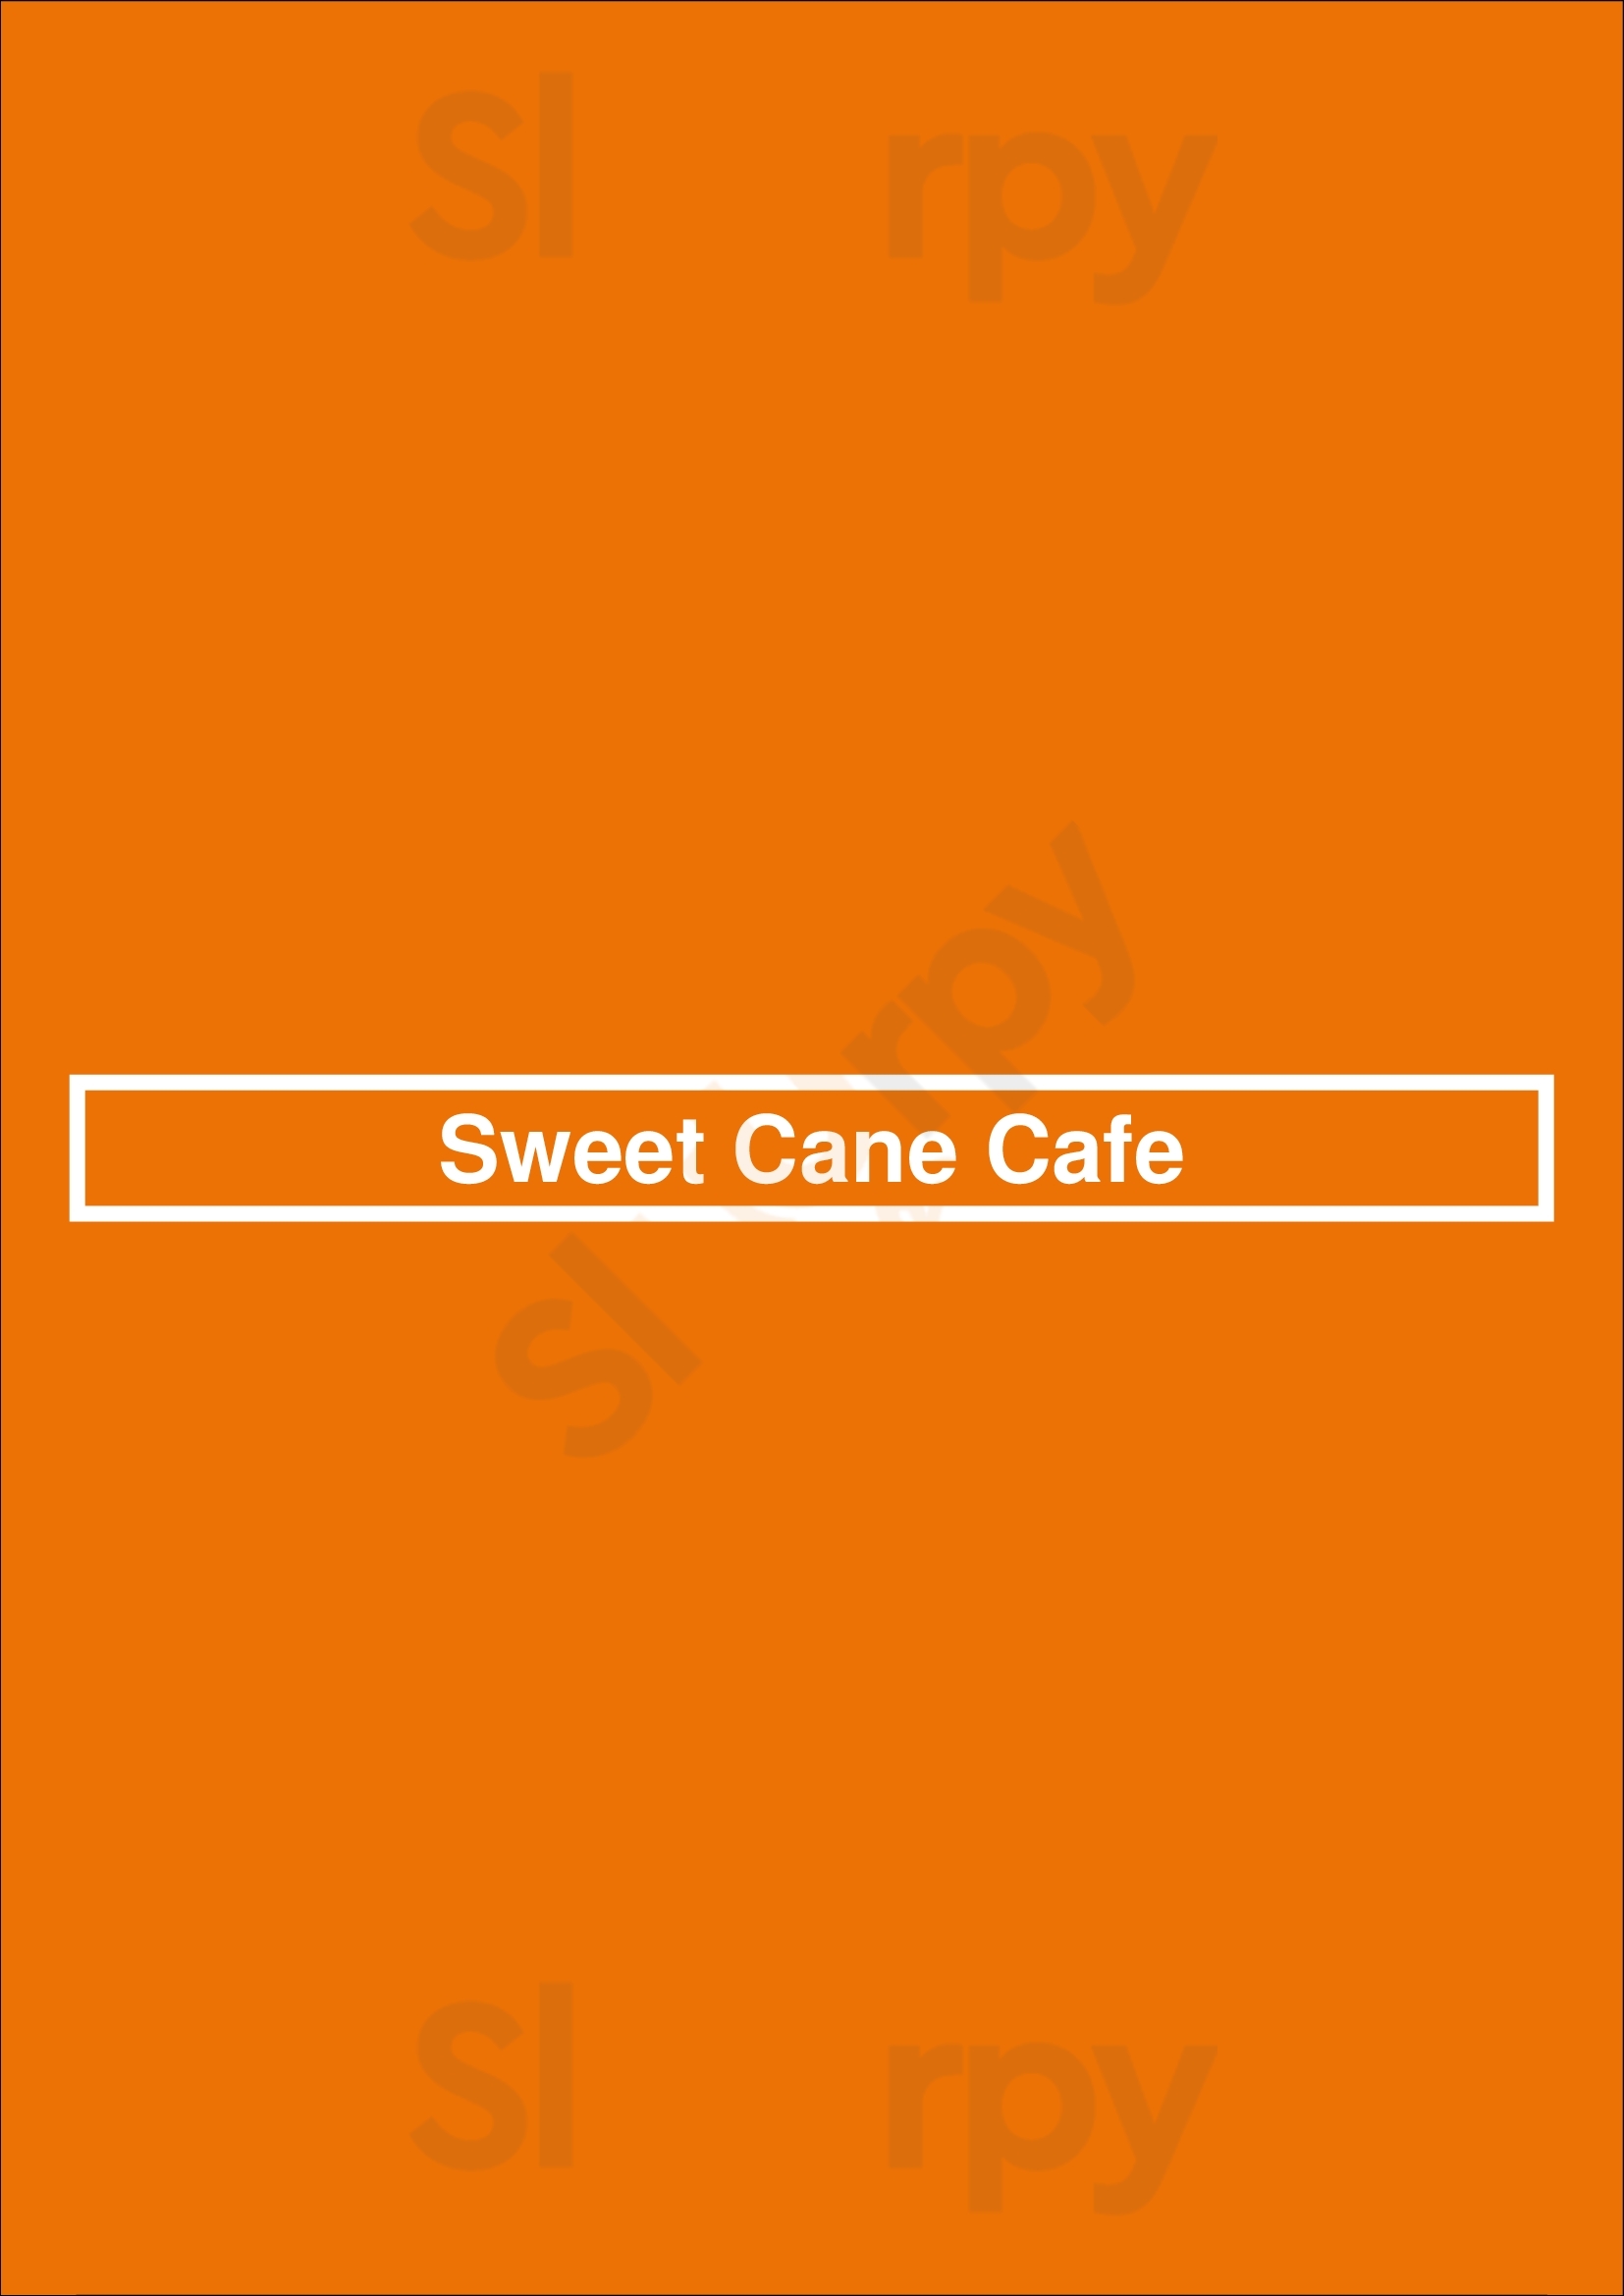 Sweet Cane Cafe Hilo Menu - 1